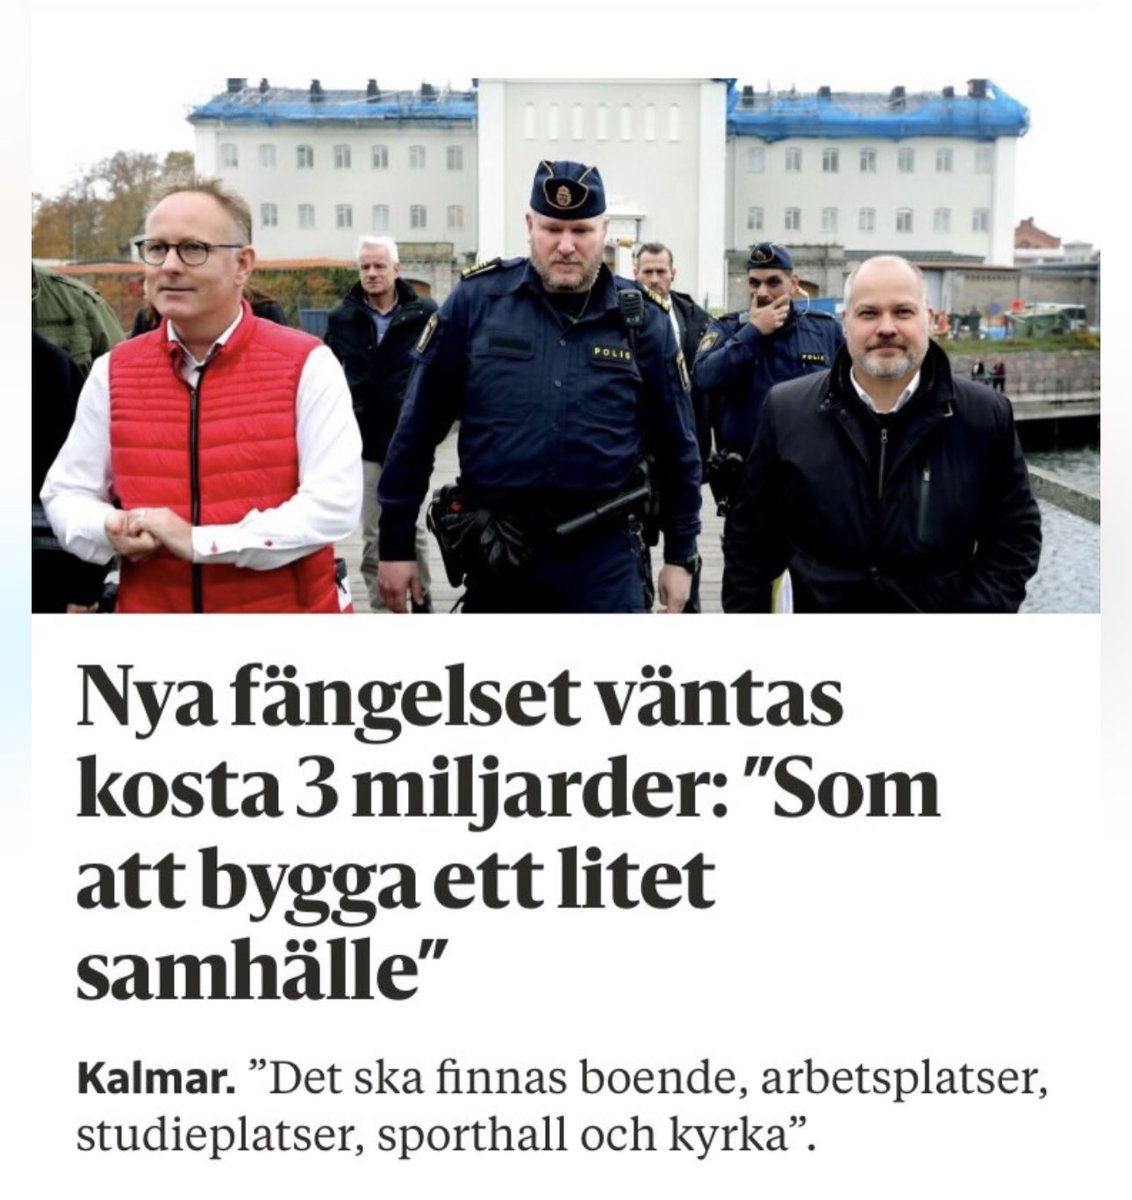 Ingen moské i det nya 'lilla samhället' i Kalmar?? 🤷🏽‍♂️🤔😂🇸🇪🤡#svpol #migpol